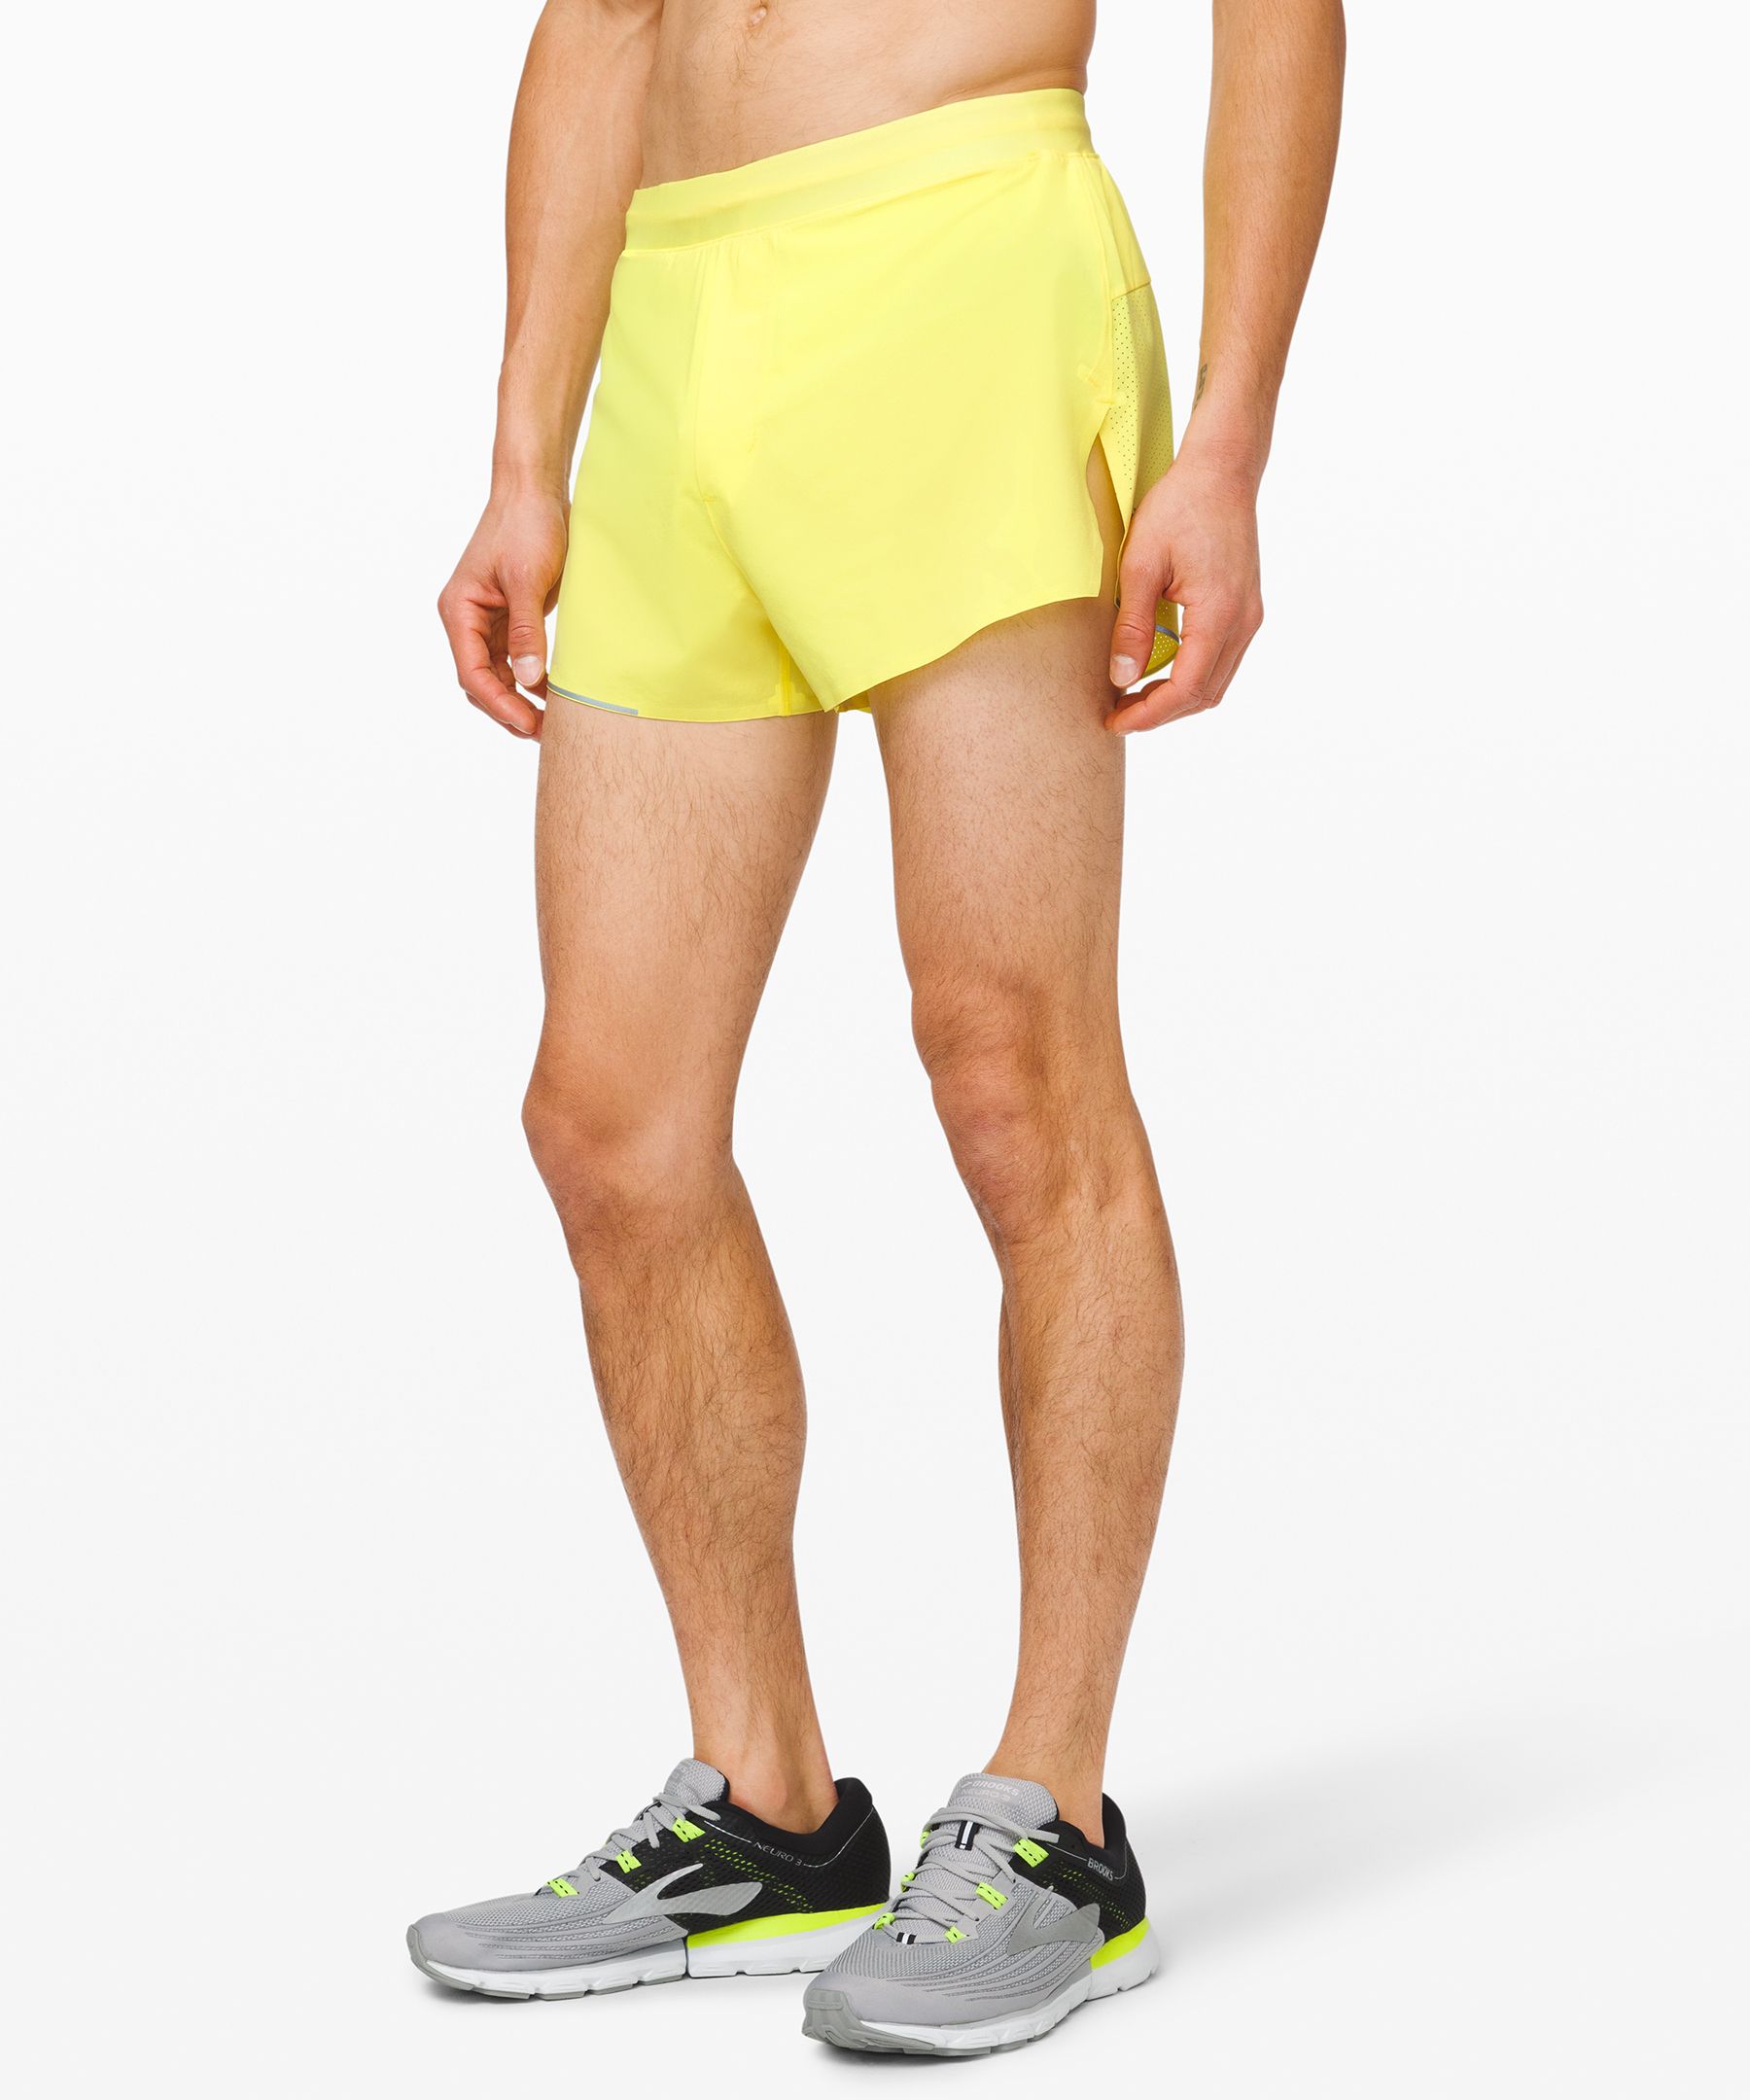 yellow lululemon shorts